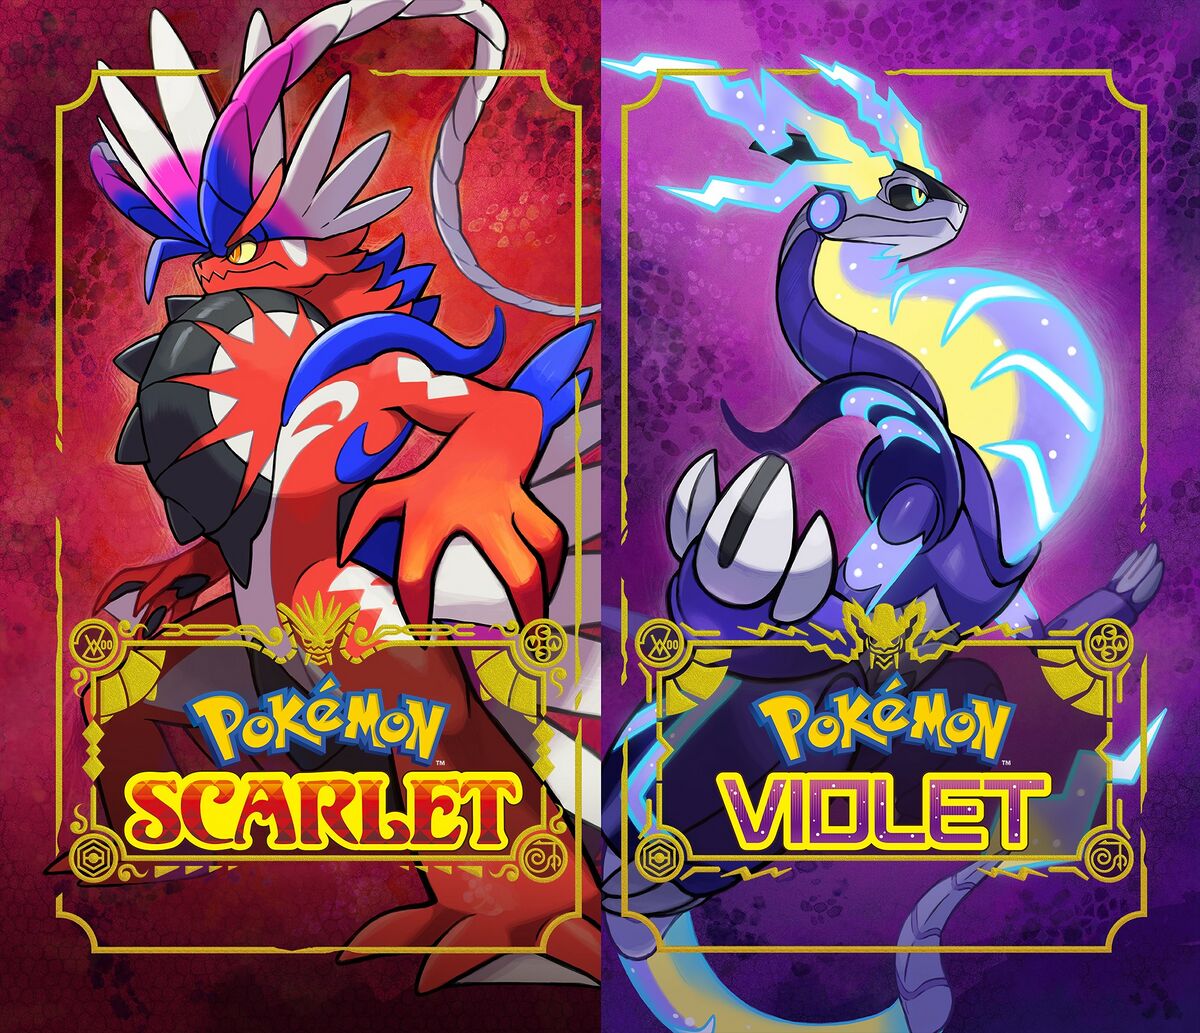 Pokémon Scarlet and Violet - Wikipedia